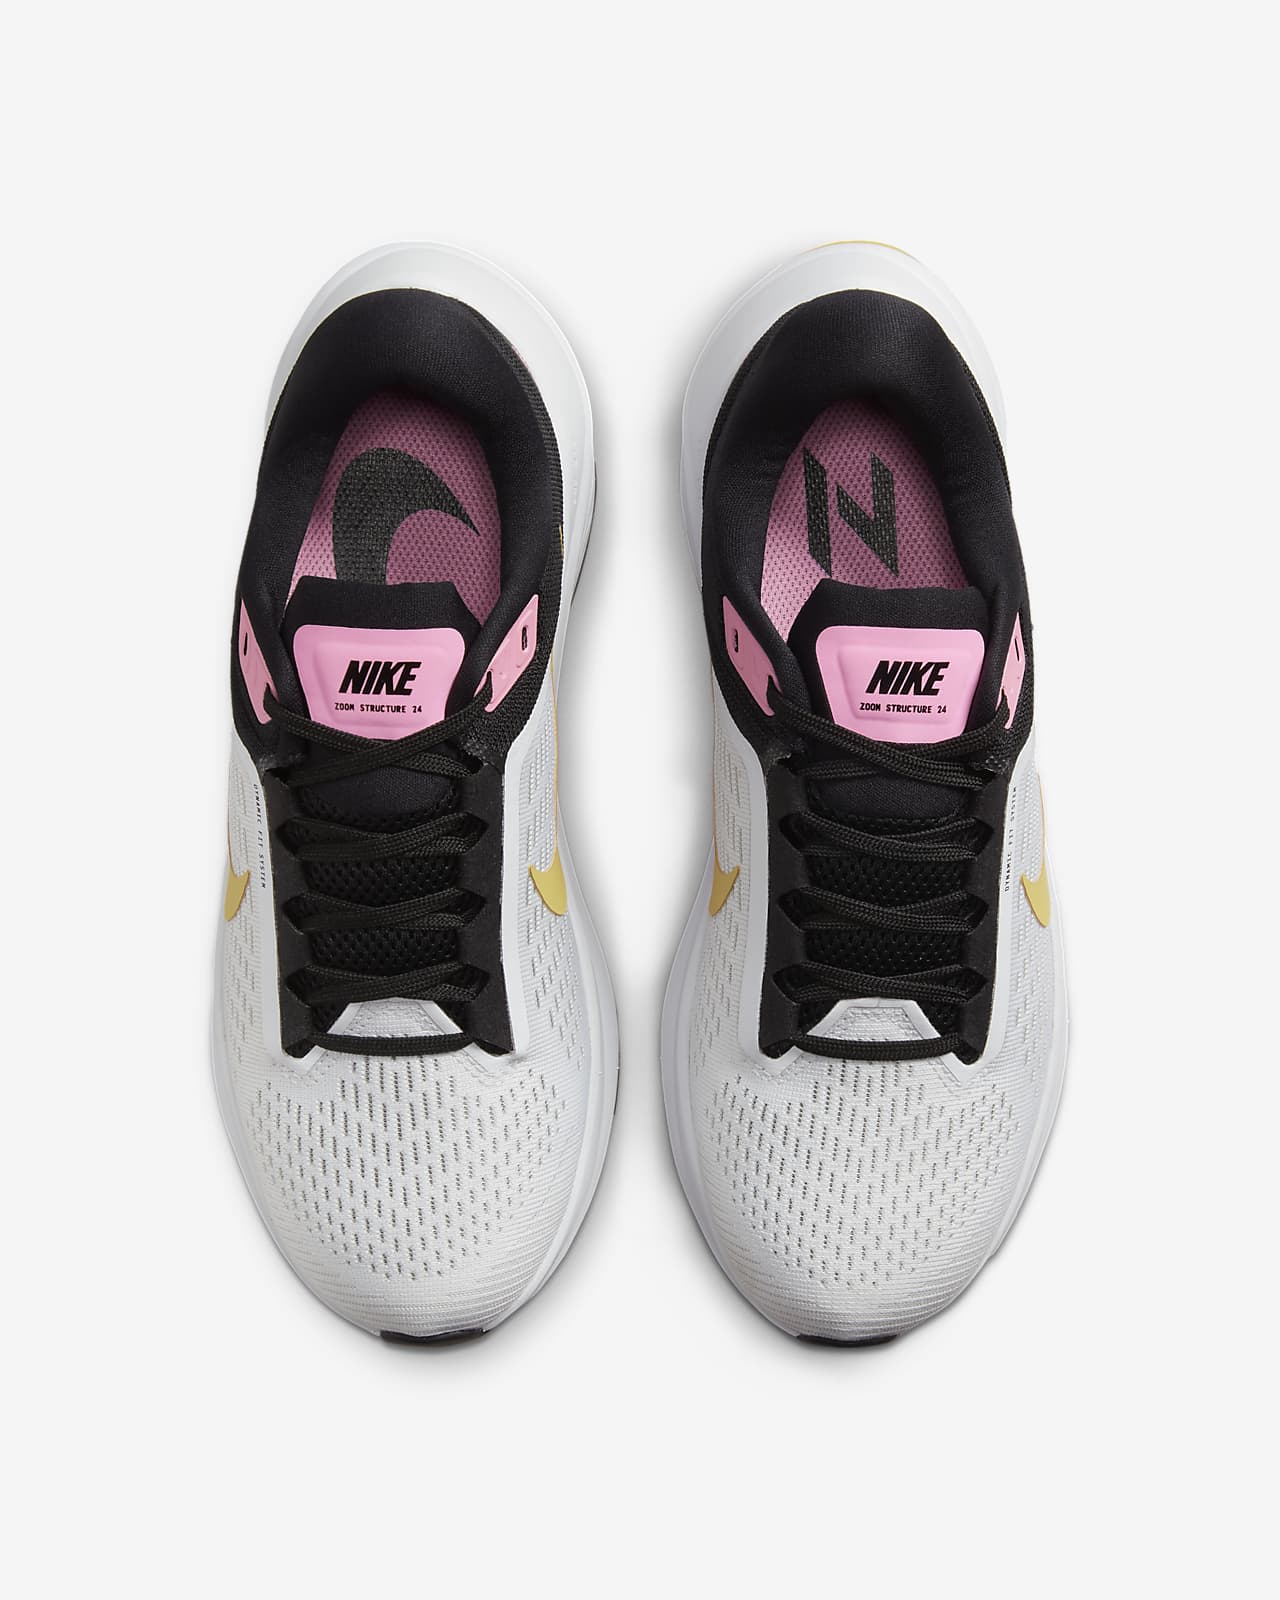 sentido común pegamento árabe Nike Structure 24 Zapatillas de running para asfalto - Mujer. Nike ES